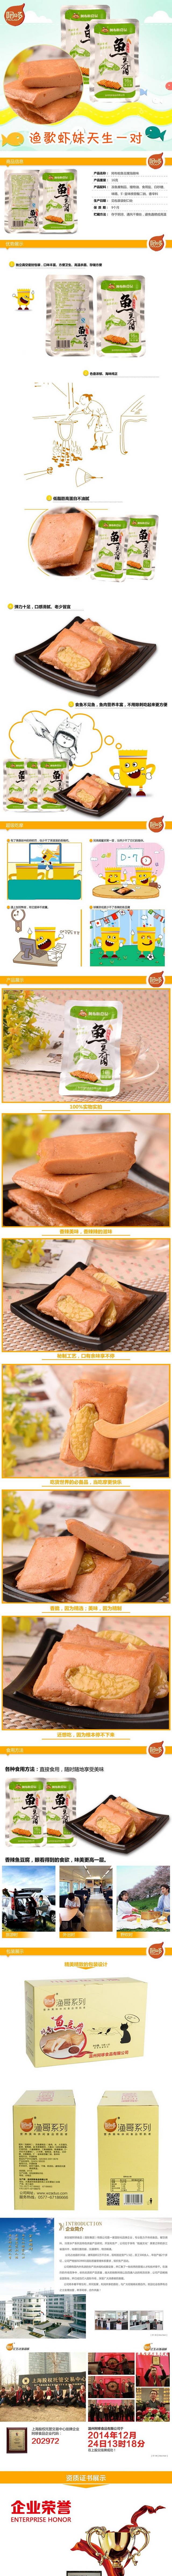 淘宝休闲食品鱼豆腐详情页描述图模板